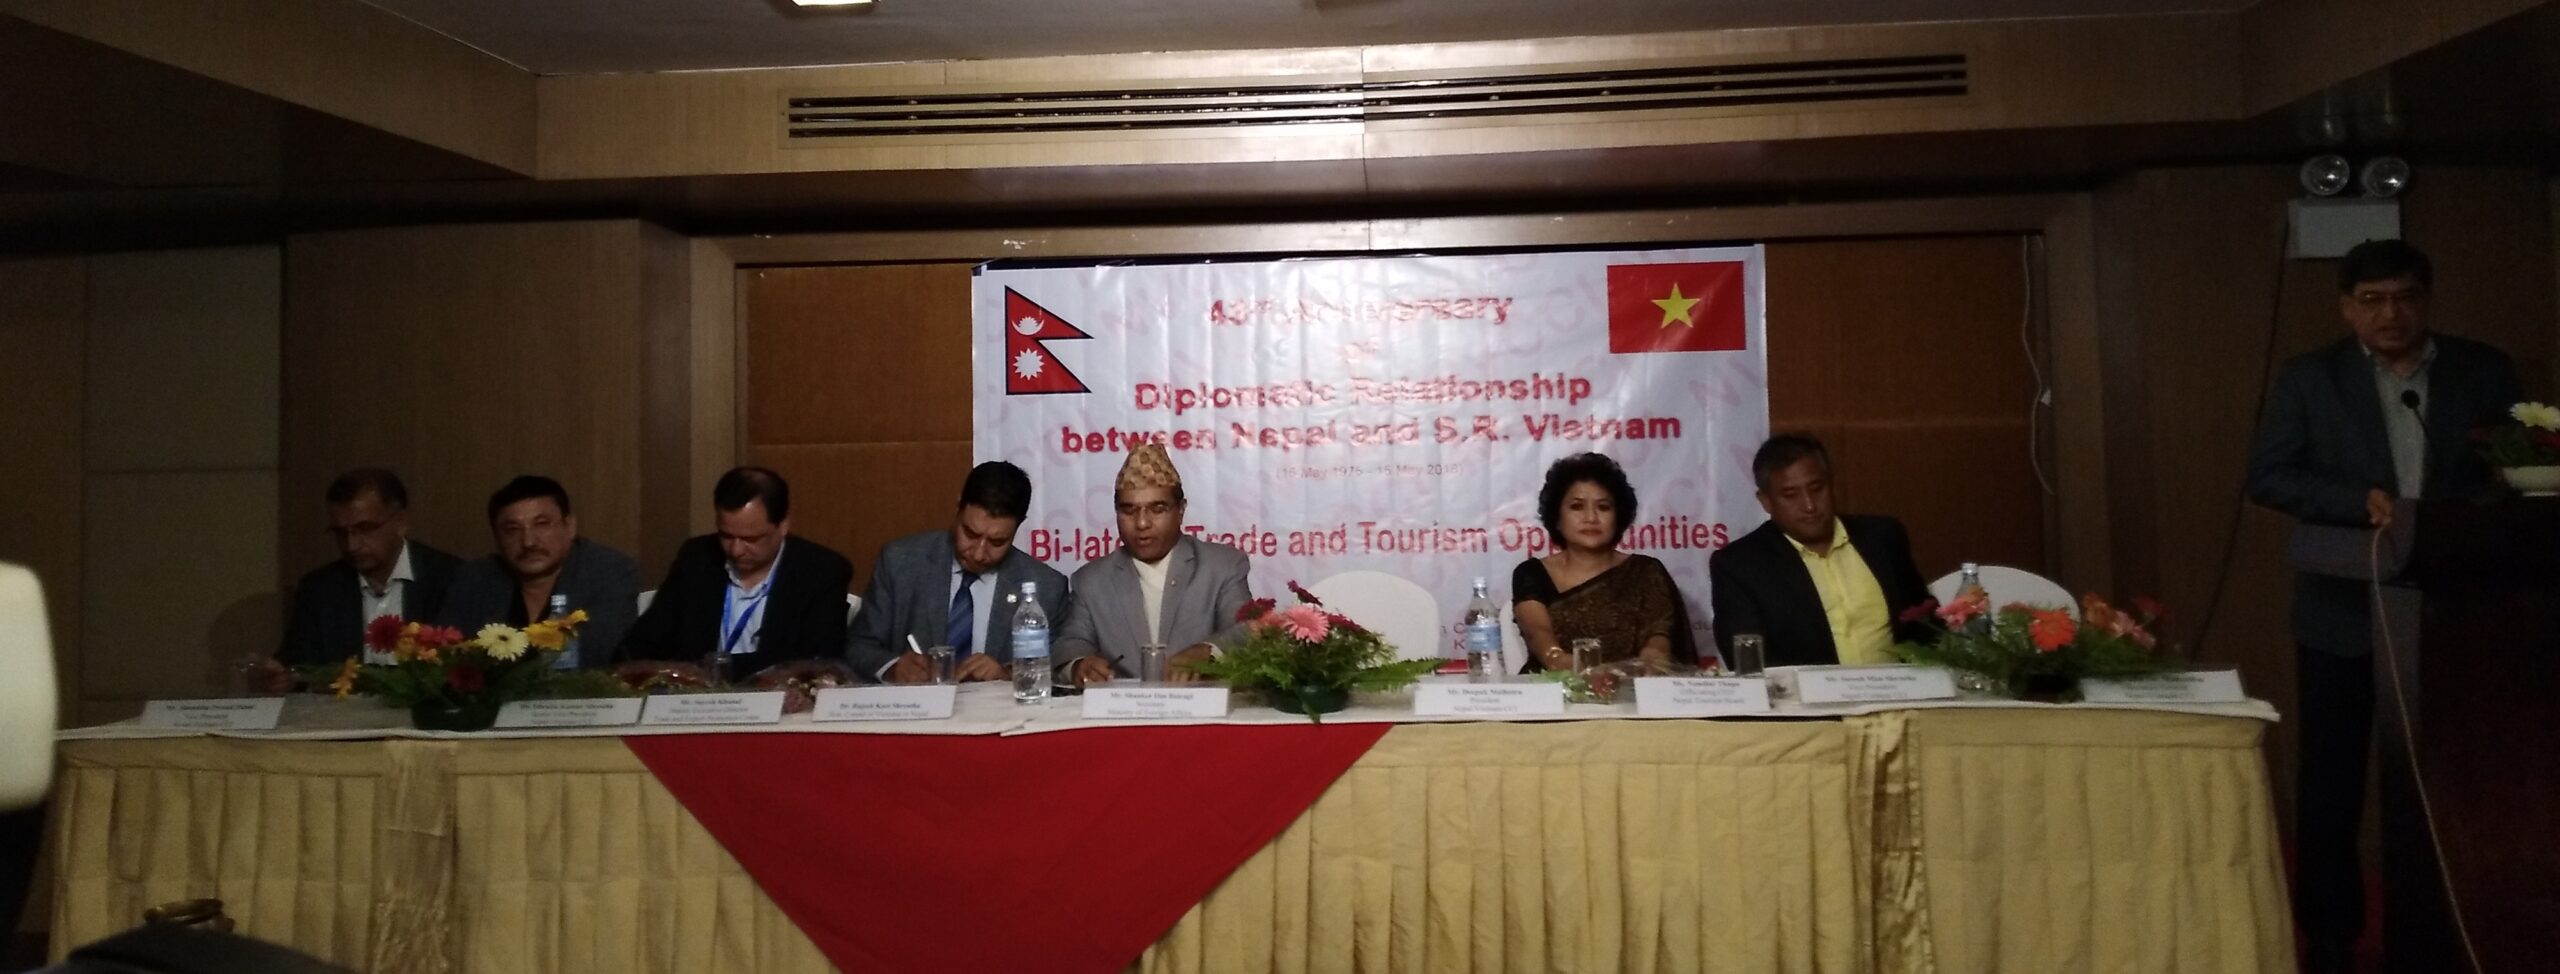 विकास र सम्बृद्धिका लागि नेपाल–भियतनाम बीच सहकार्य आवश्यक छ : सचिब वैरागी